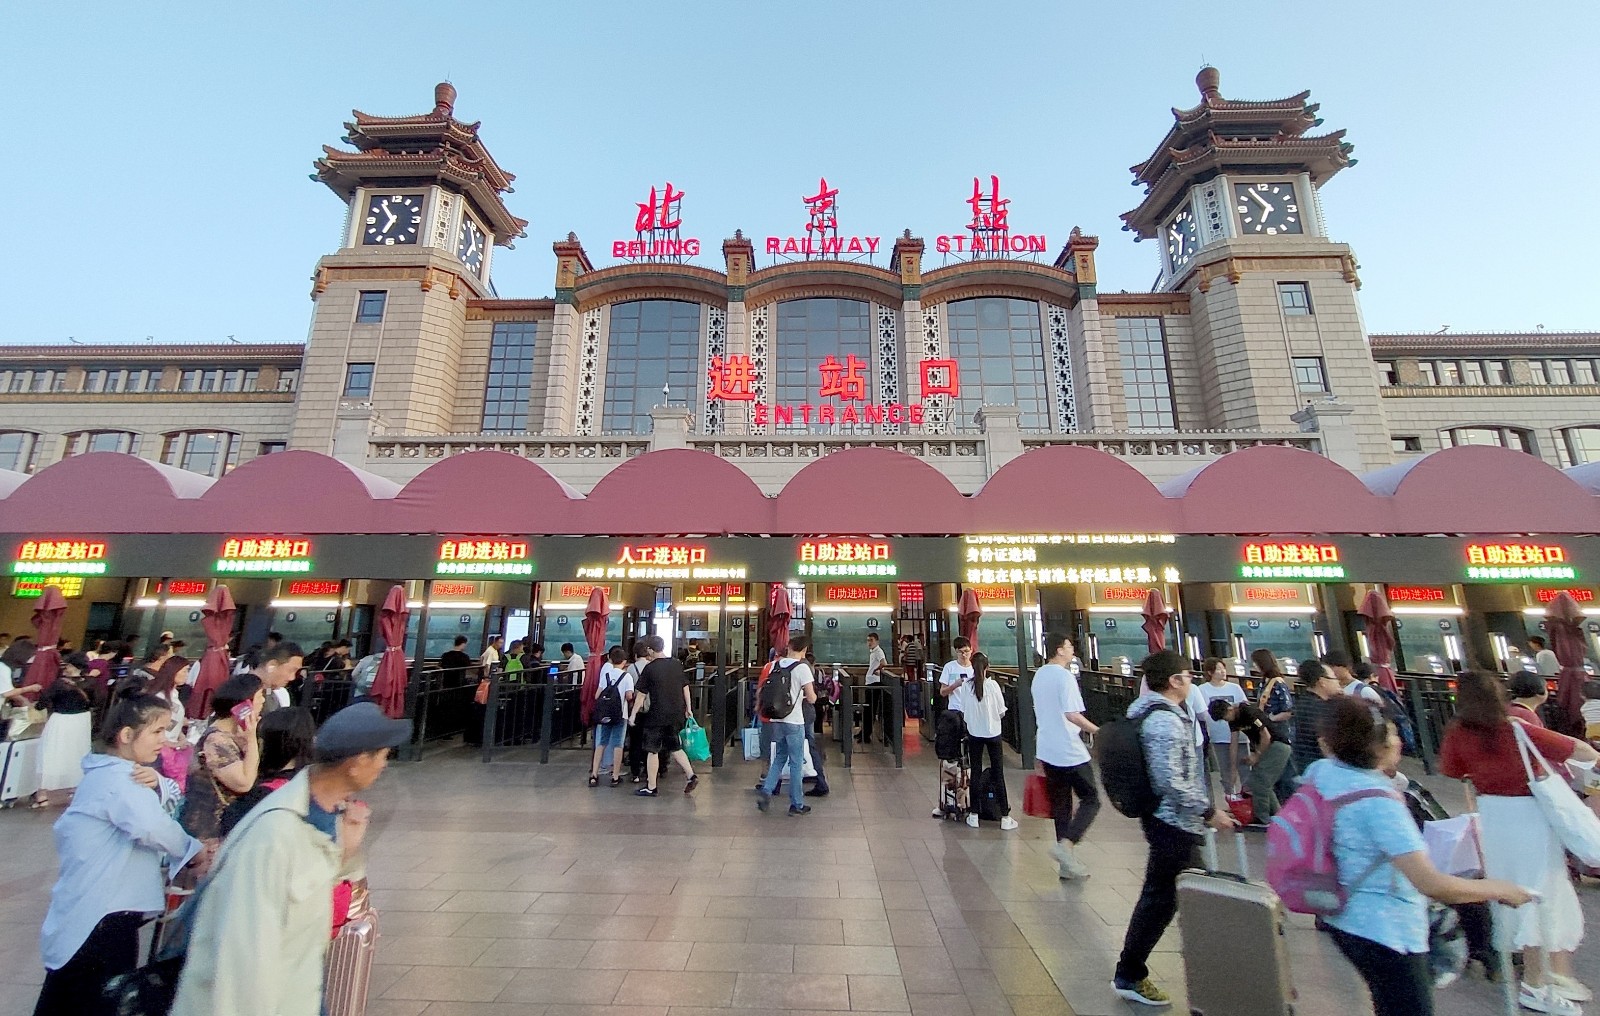 北京站,如今的样子你还记得吗?三个重要信息提醒